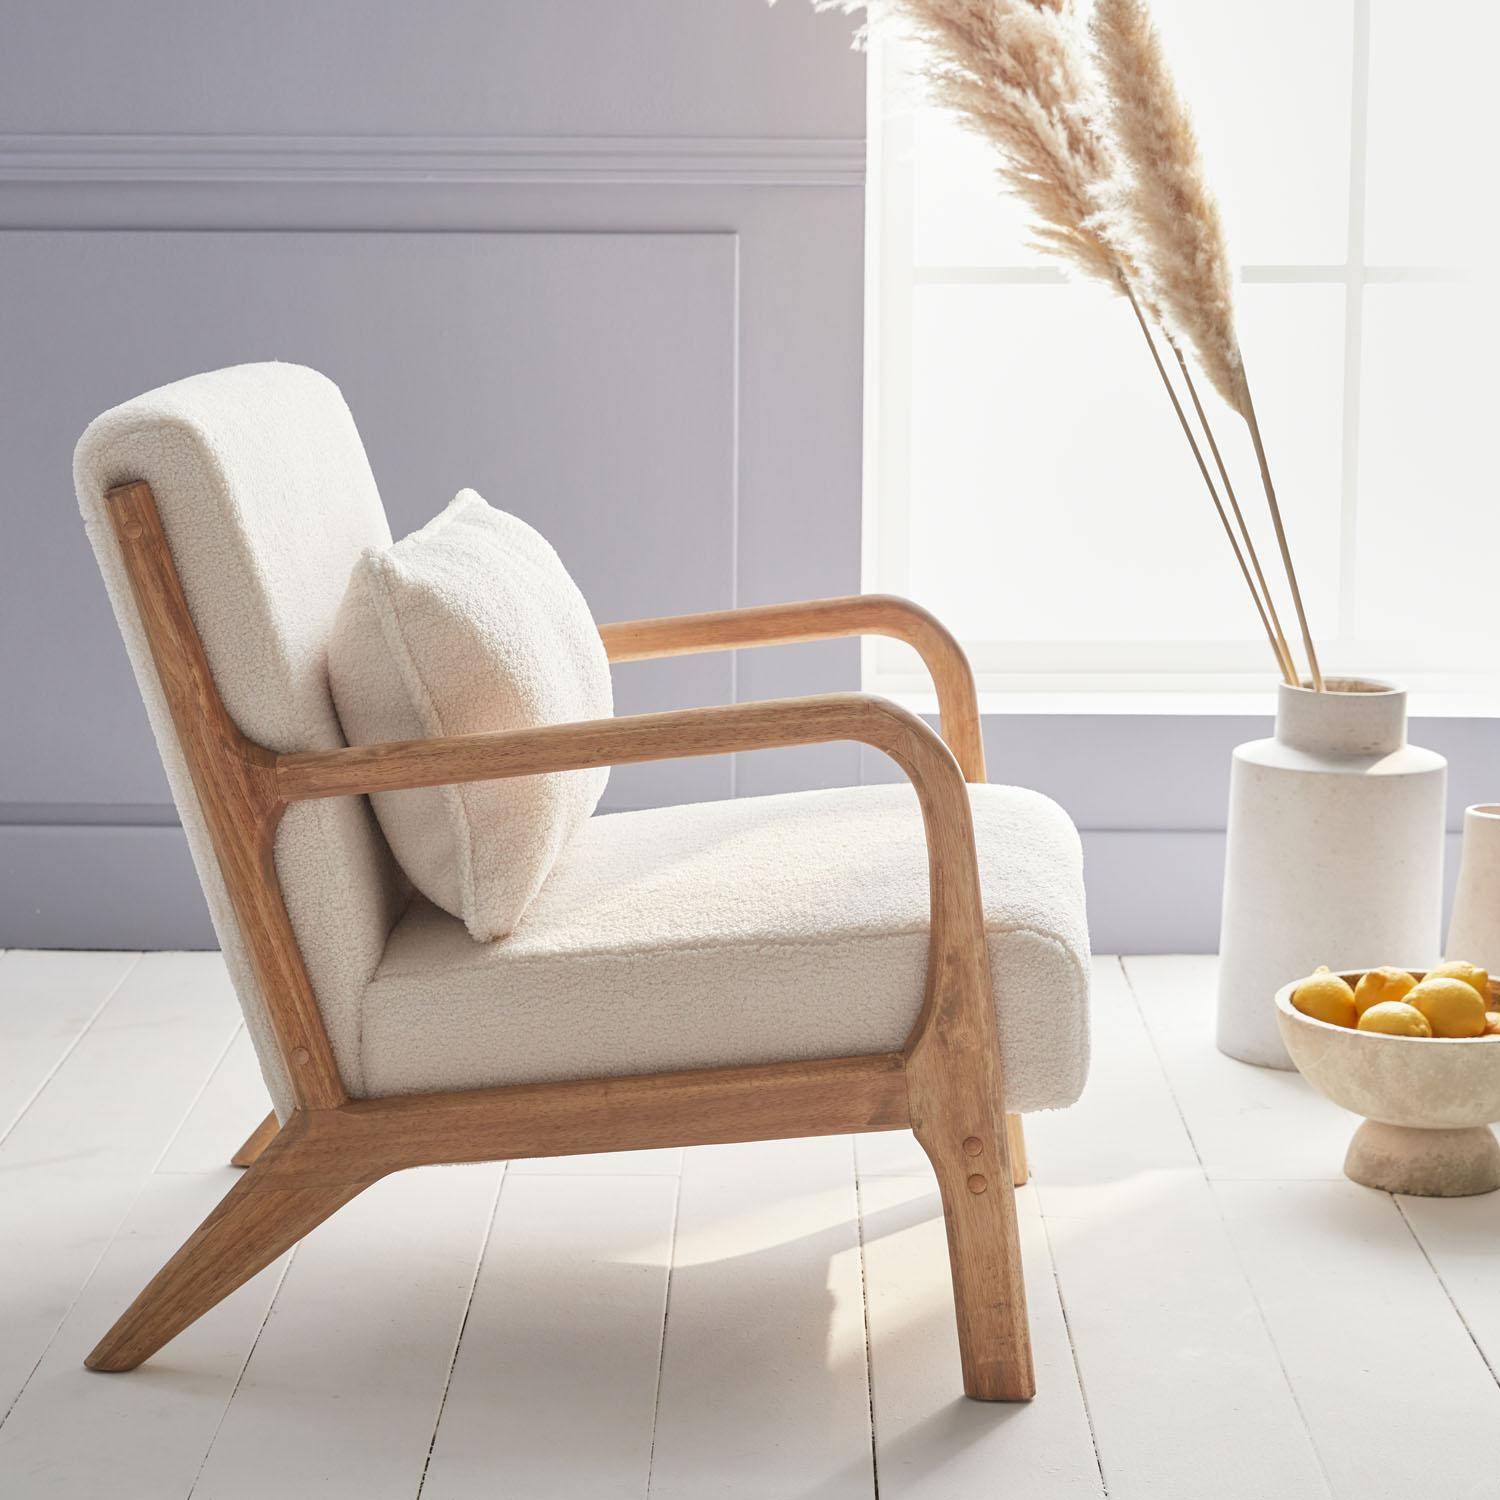 Sillón de rizos blancos, madera y tela, 1 asiento recto fijo, patas de compás escandinavas, armazón de madera maciza, asiento cómodo Photo3